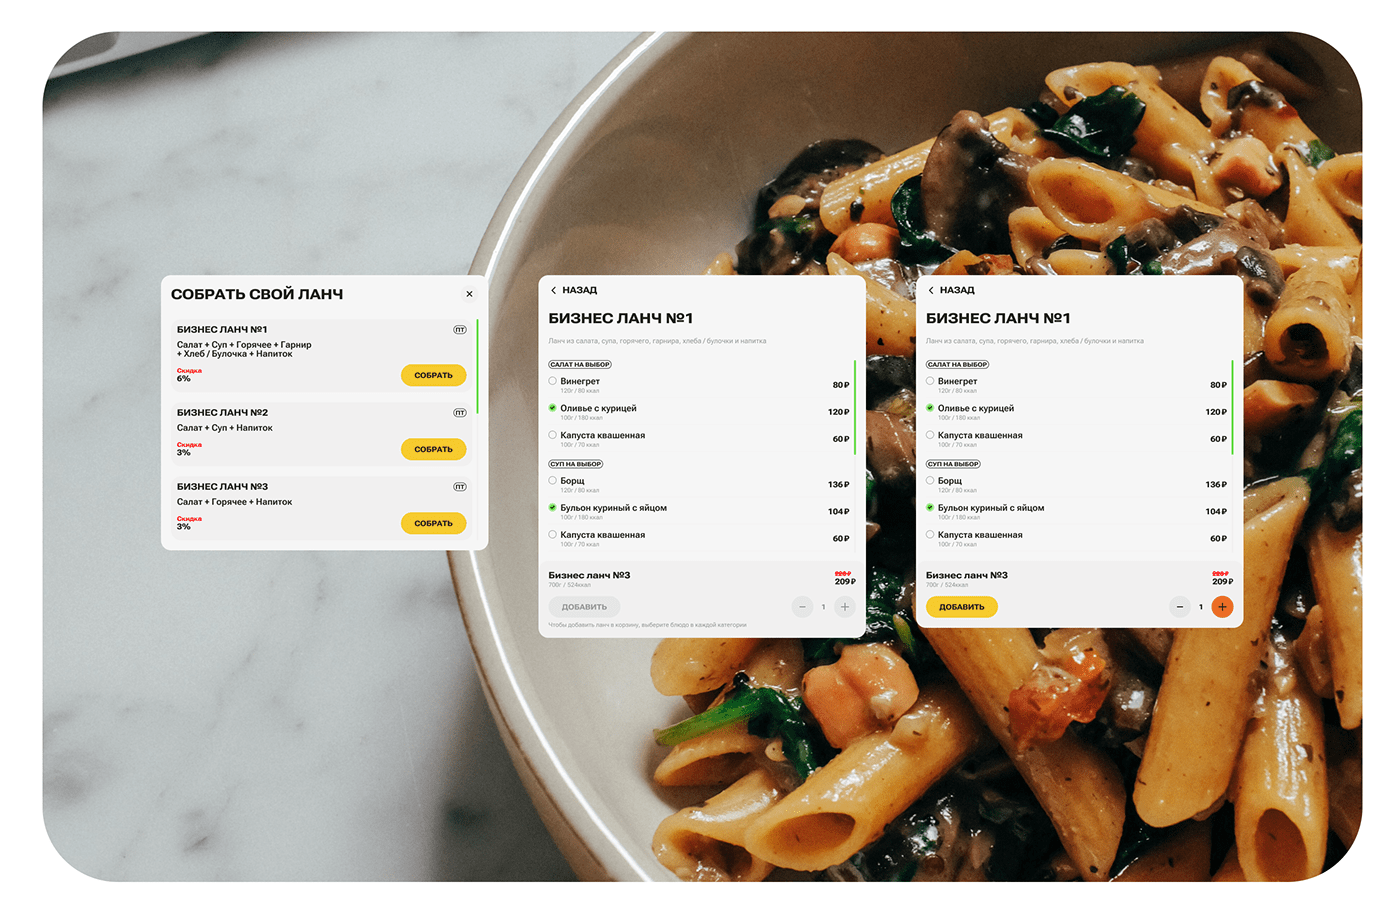 Food  service Mobile first Web Design  UI/UX Website user interface ui design landing page shop